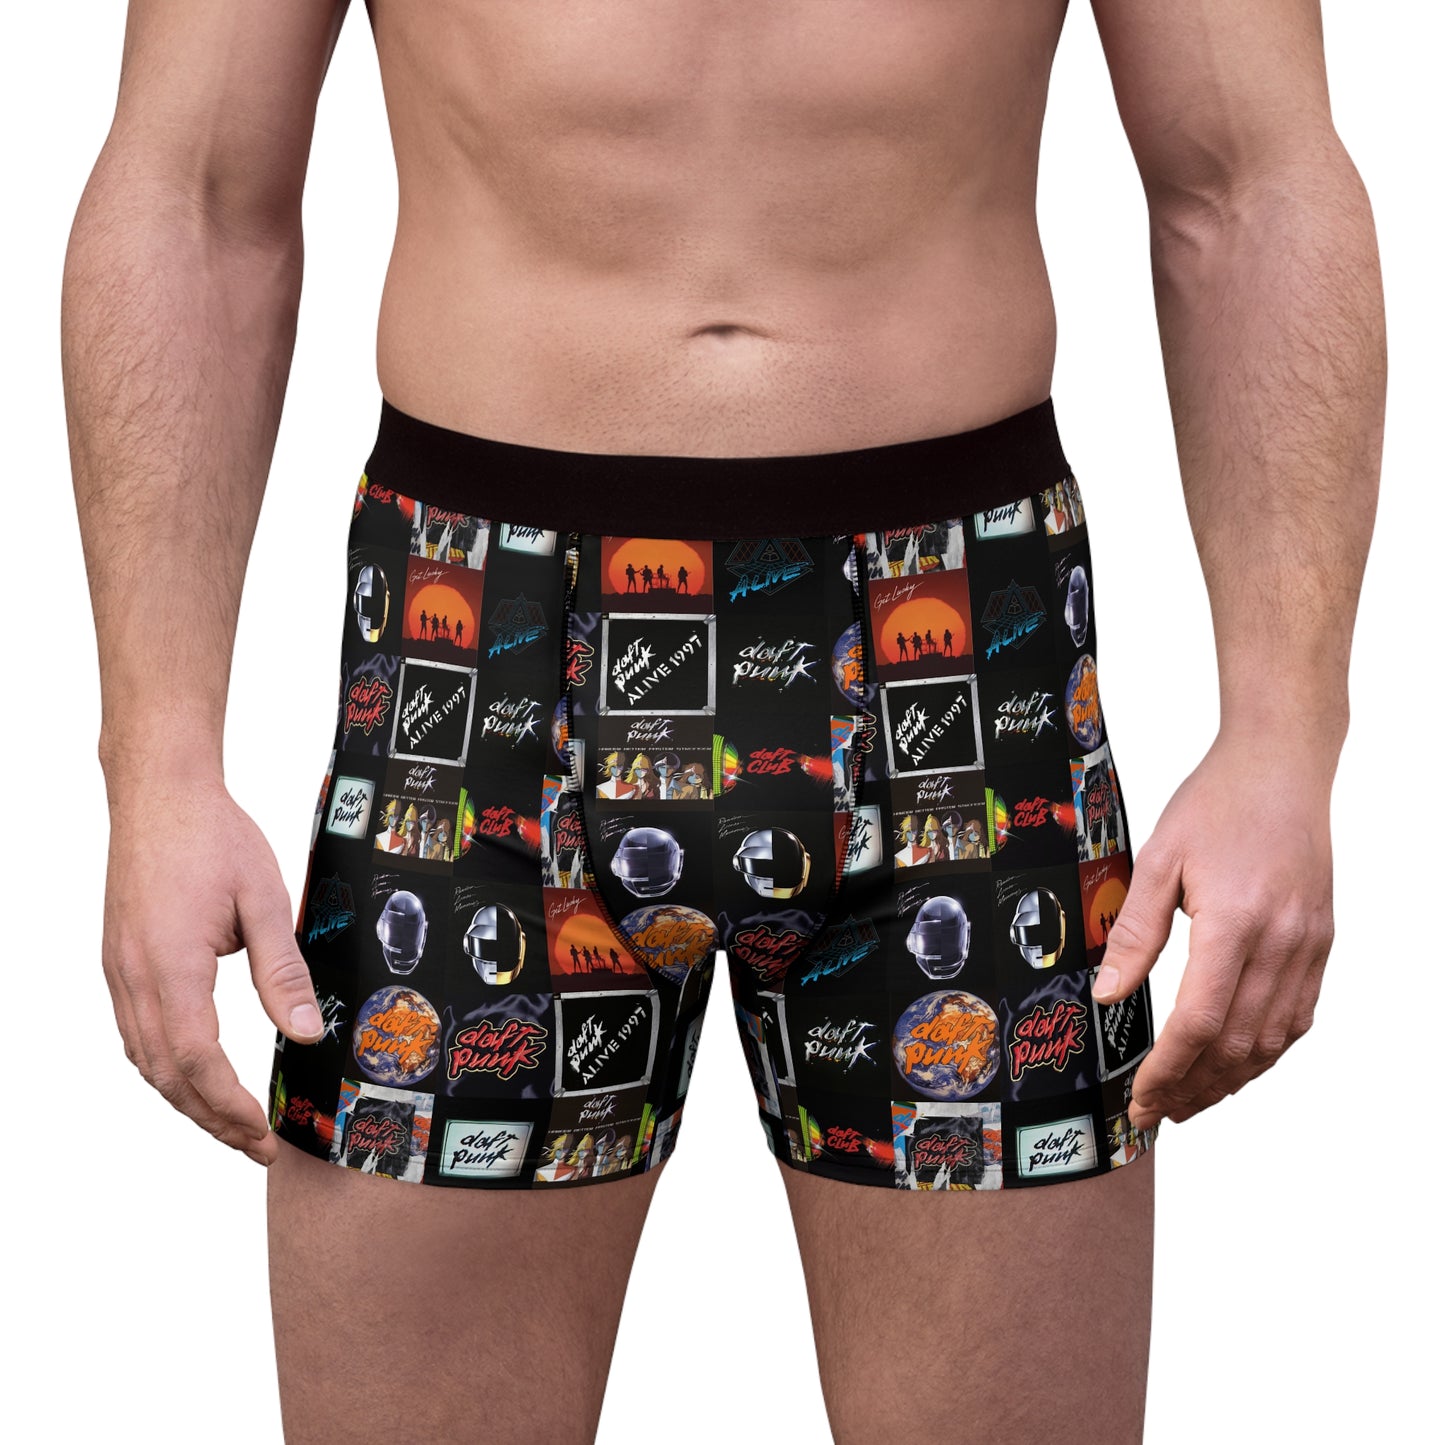 Daft Punk Album Cover Art Collage Men's Boxer Briefs Underwear